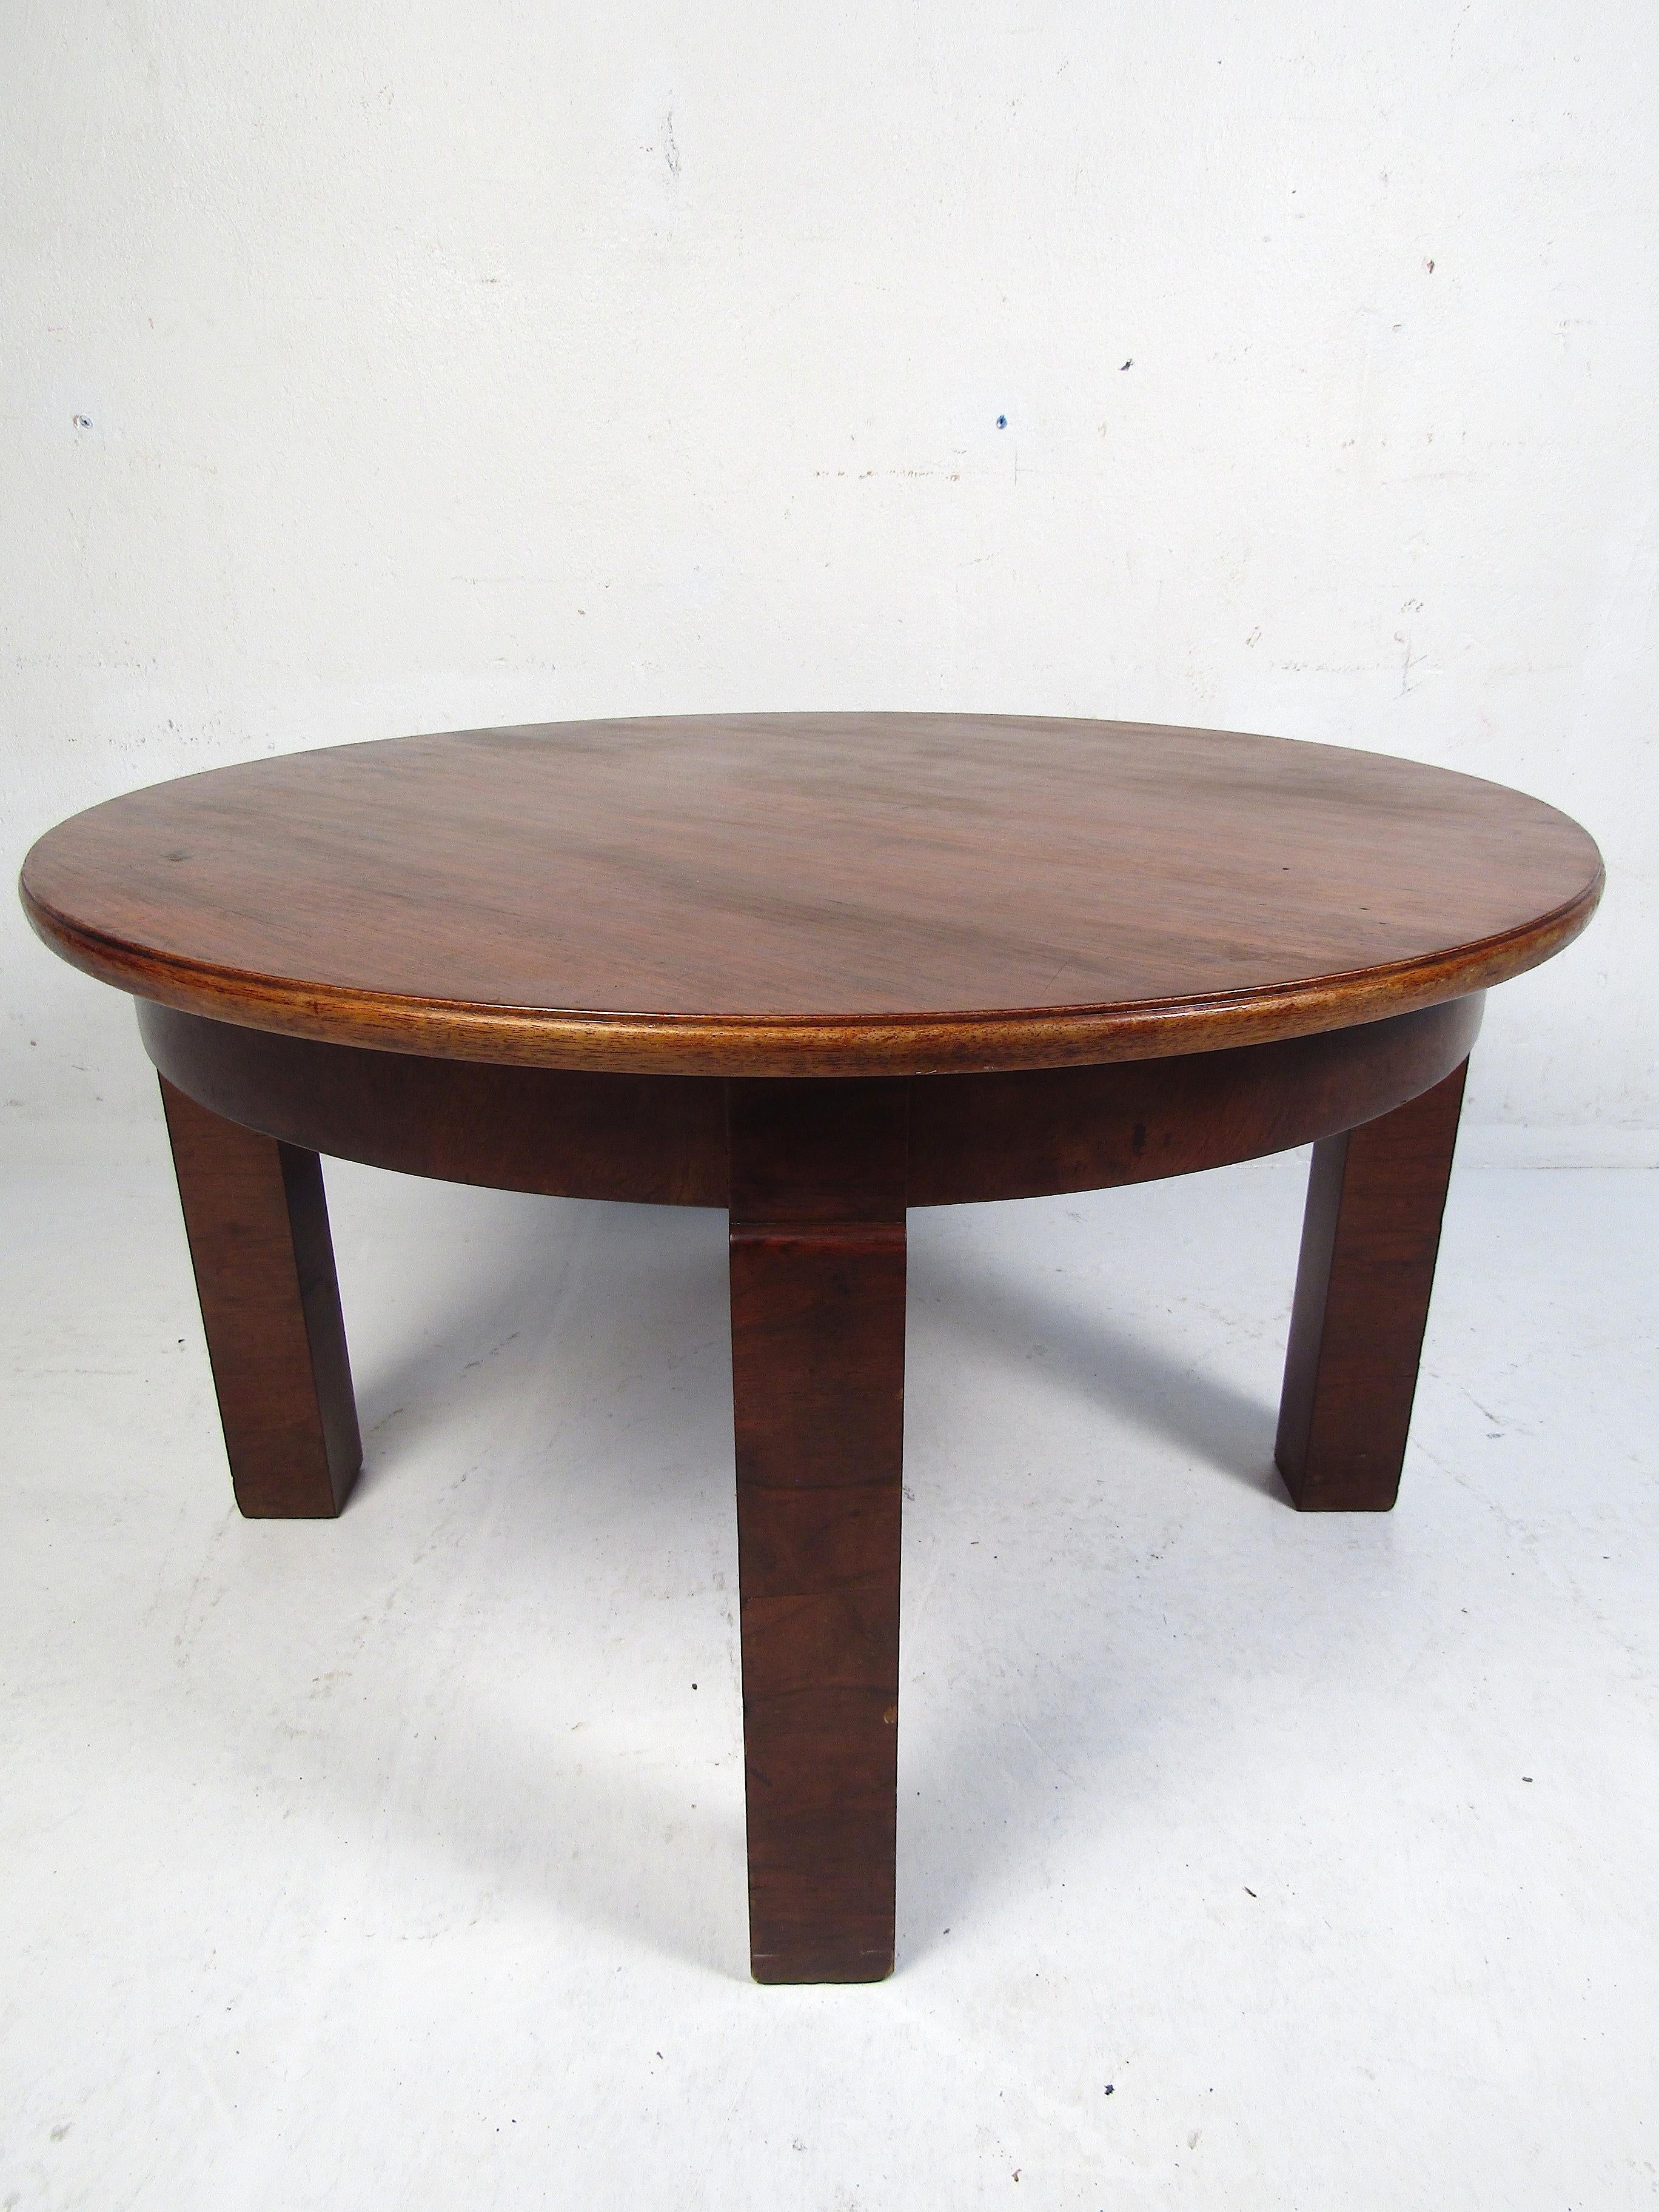 Intéressante table basse du milieu du siècle. Attrayant motif de grain de bois sur le plateau de table circulaire. Marqué en dessous - 